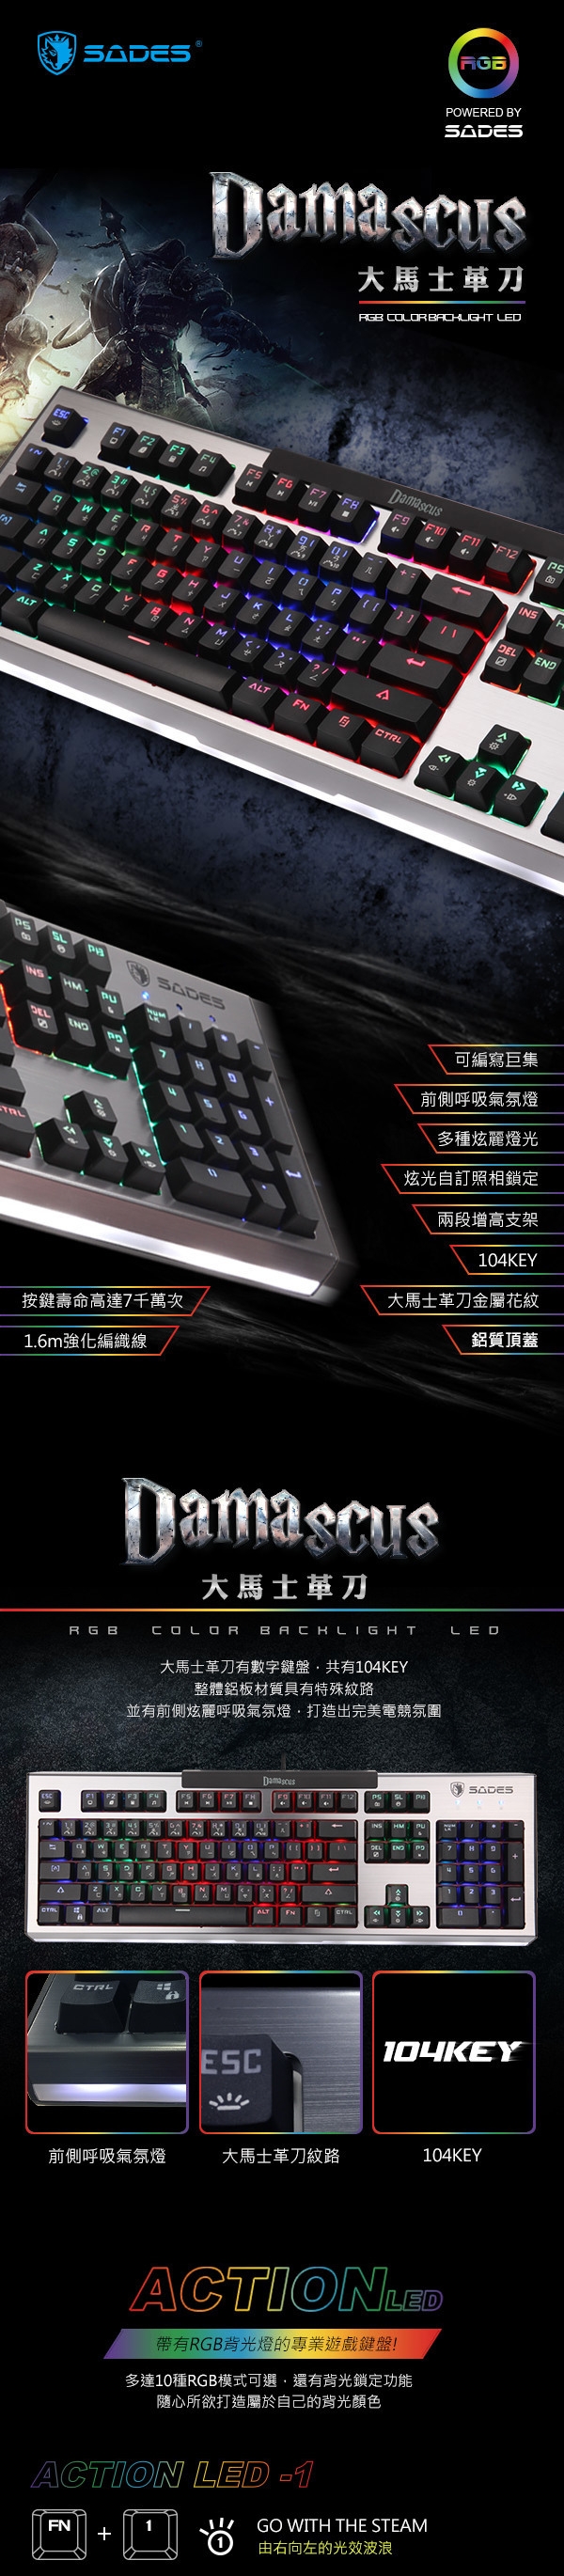 SADES賽德斯 DAMASCUS 大馬士革刀 RGB巨集機械式電競鍵盤 (青軸)